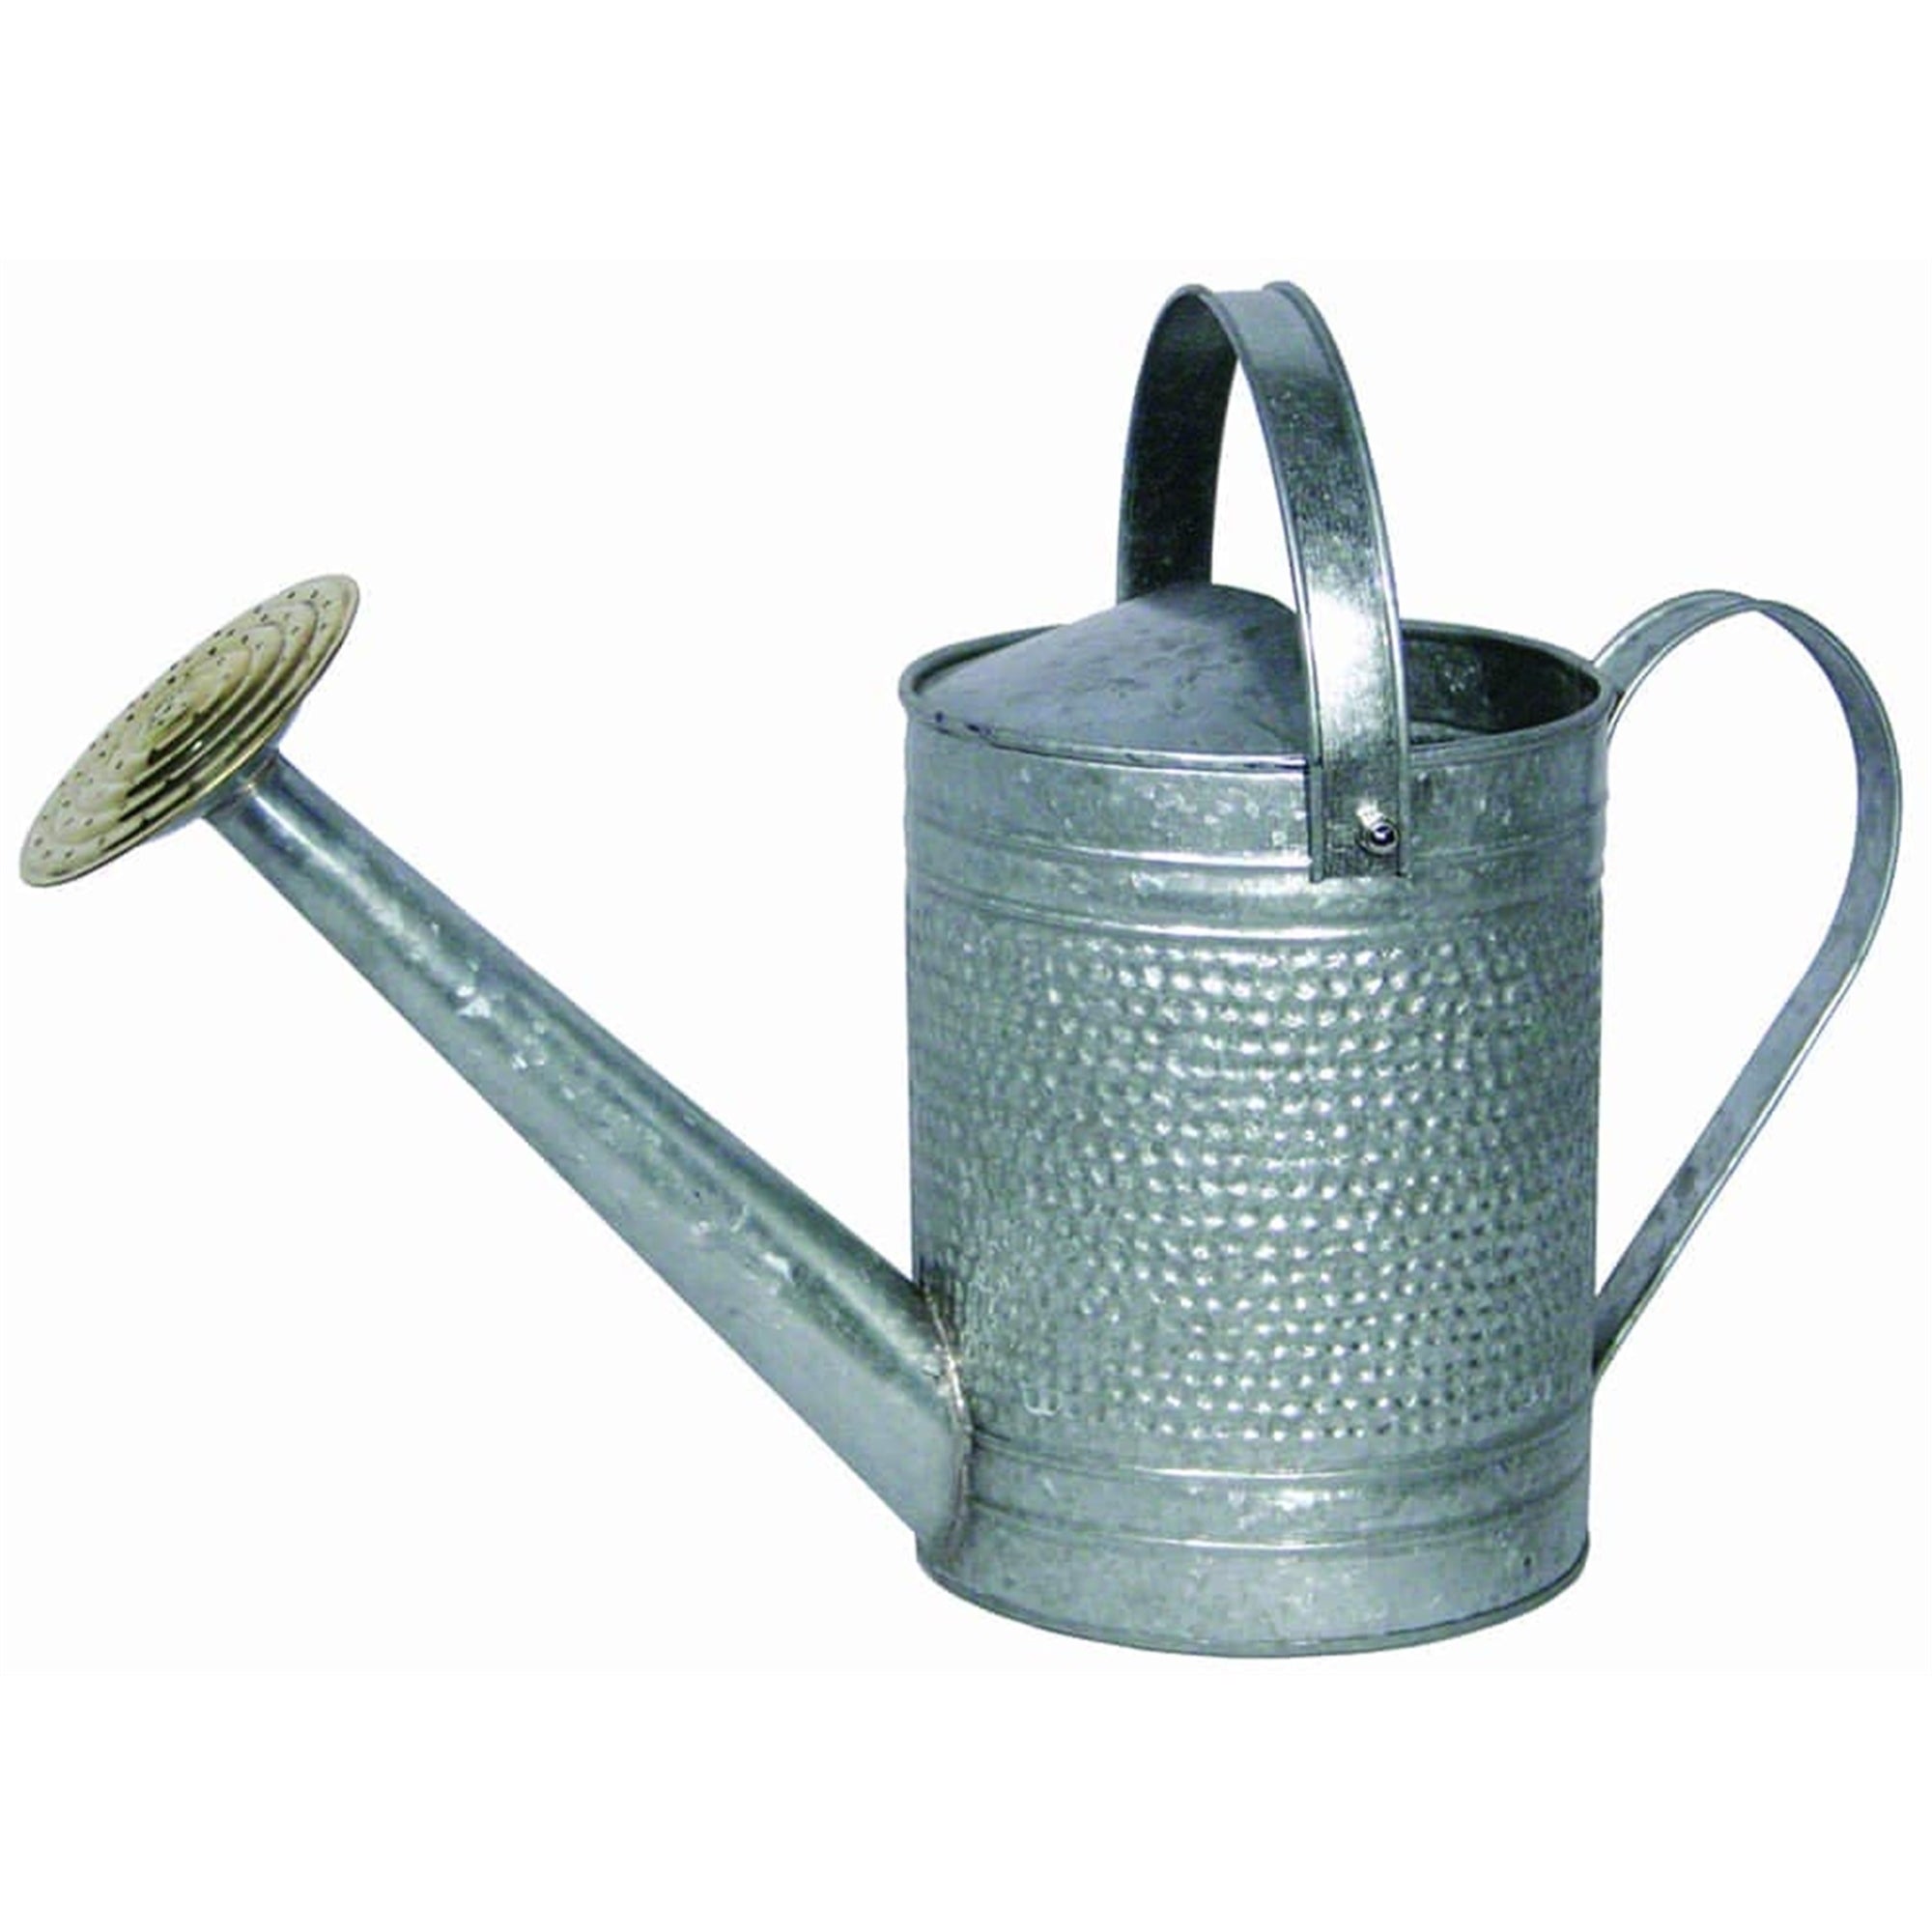 Robert Allen Home & Garden Jameson Metal Watering Can, Galvanized, 1 Gallon